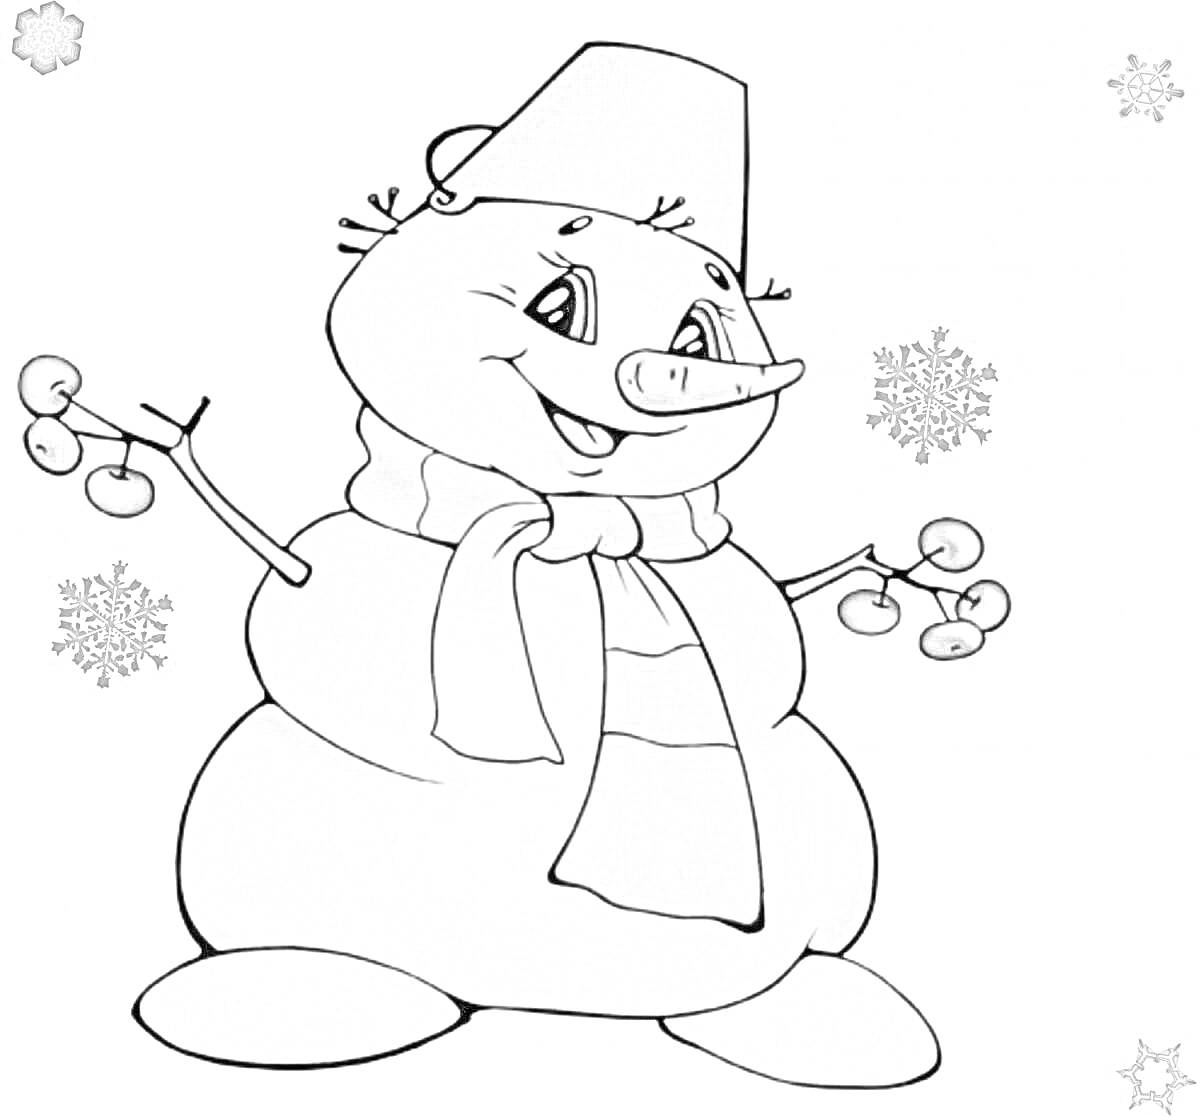 Раскраска Снеговик в ведре с шарфом и ветками с ягодами, снежинками